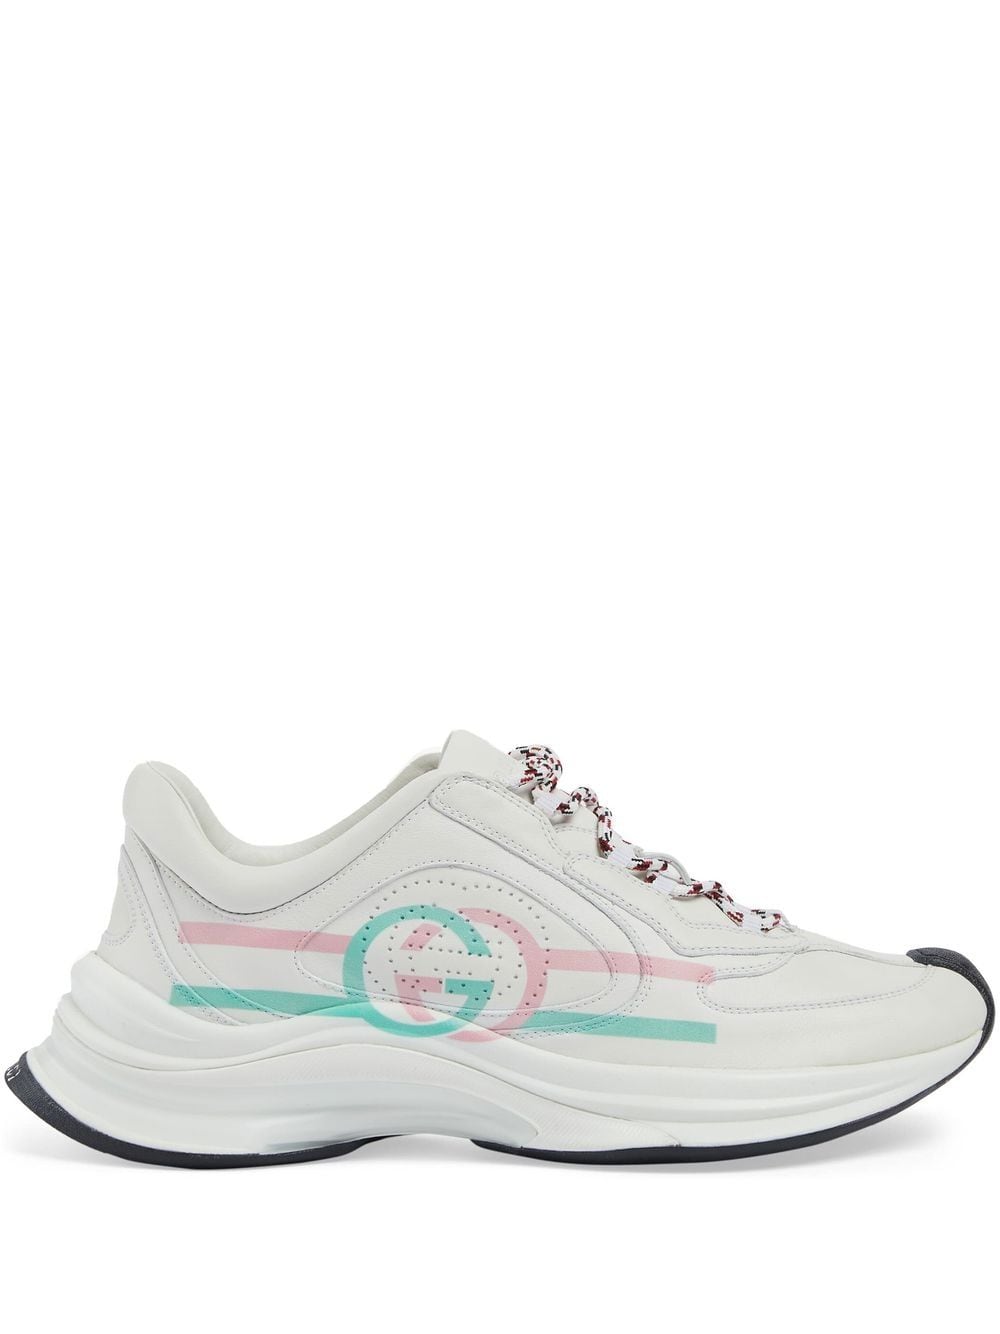 Thể thao thời trang cực kỳ cần thiết: Giày sneaker da nữ trắng, hồng và xanh lá cây